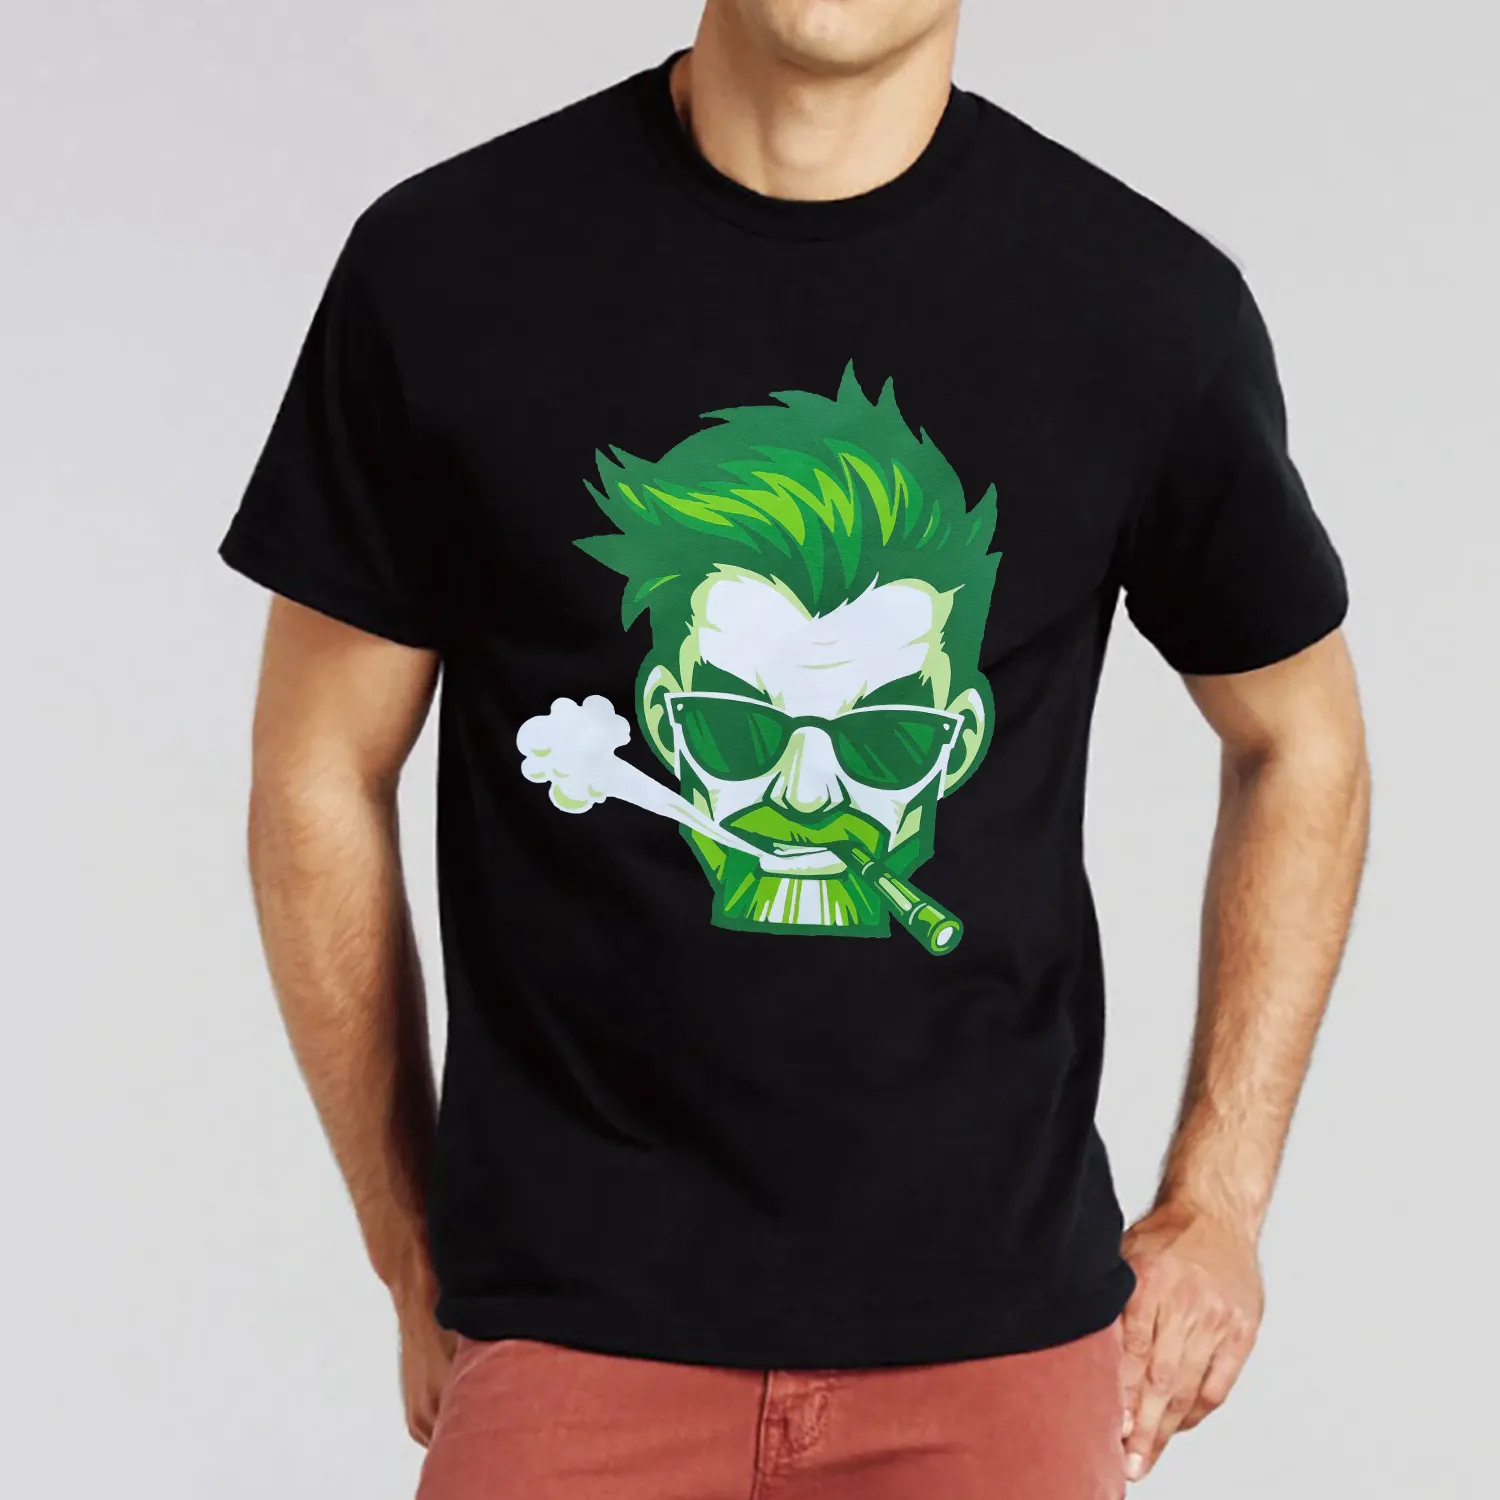 100% Baumwolle schwarz Anime Rundhals T-Shirt Logo Druck Männer Kleidung Plus Size T-Shirts übergroße T-Shirt